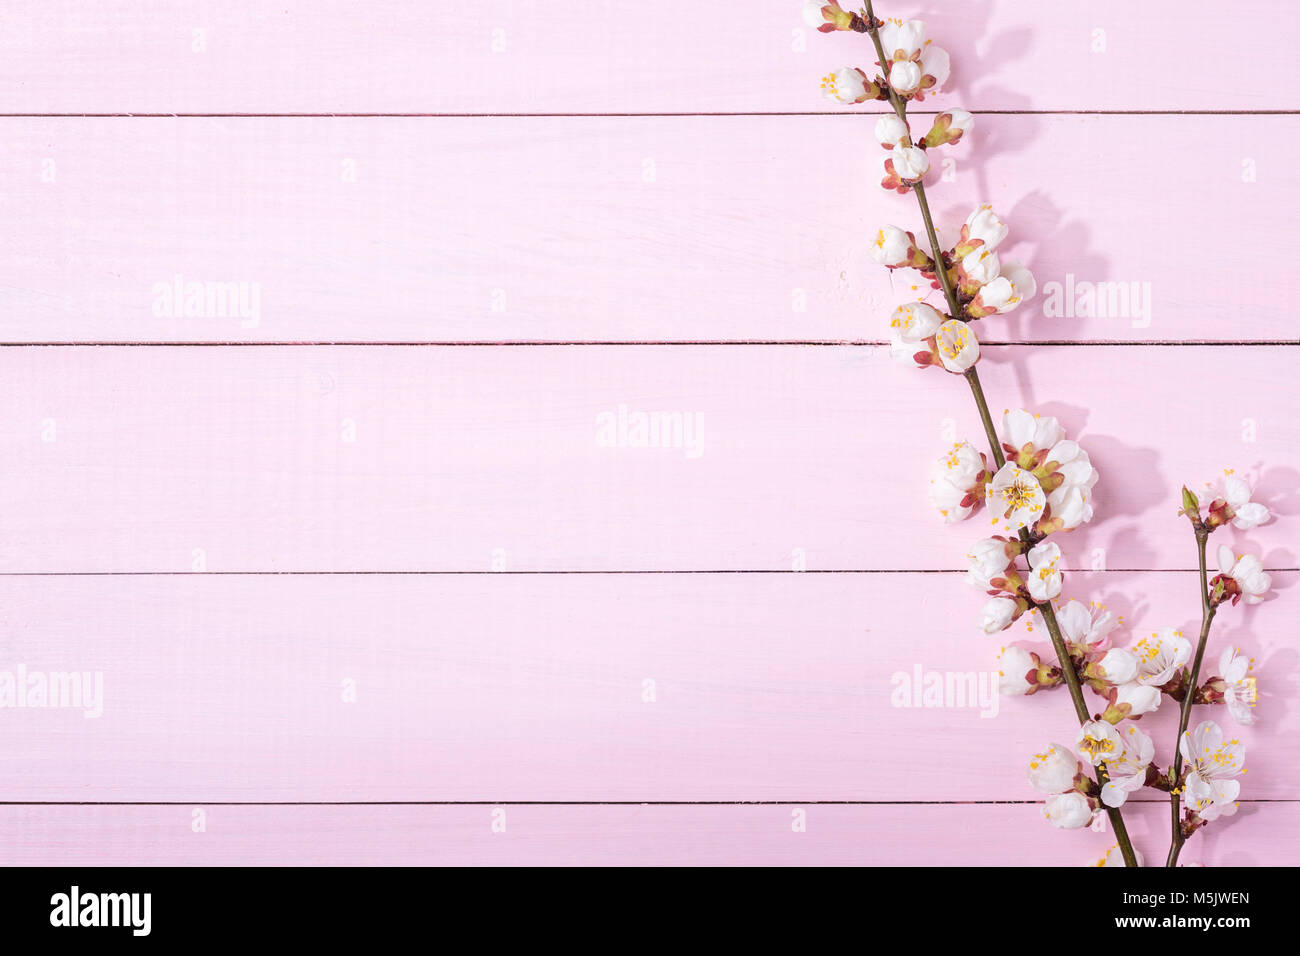 Rosa Holz- Hintergrund mit Zweigen von blühenden Aprikose und kopieren Sie Platz für Text. Stockfoto